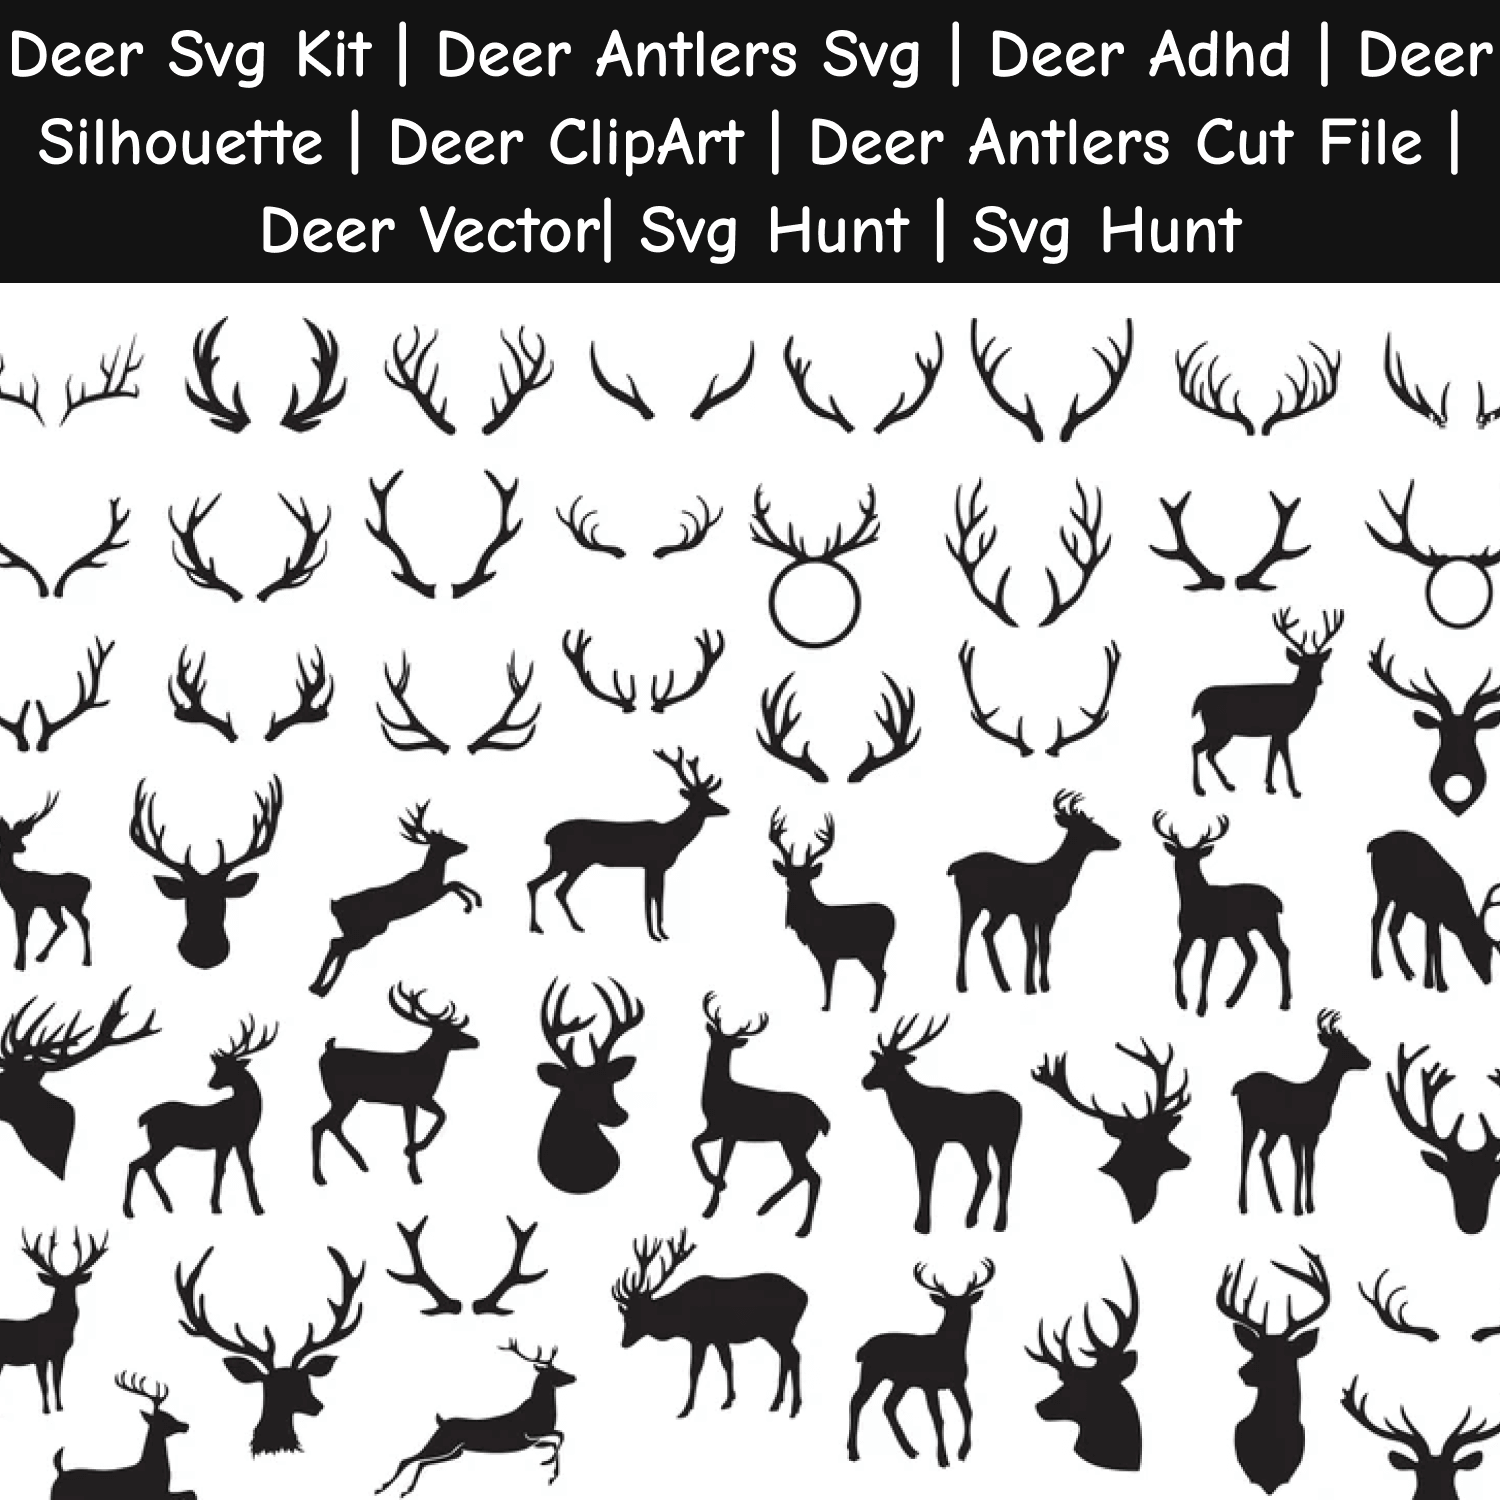 Deer SVG Kit.